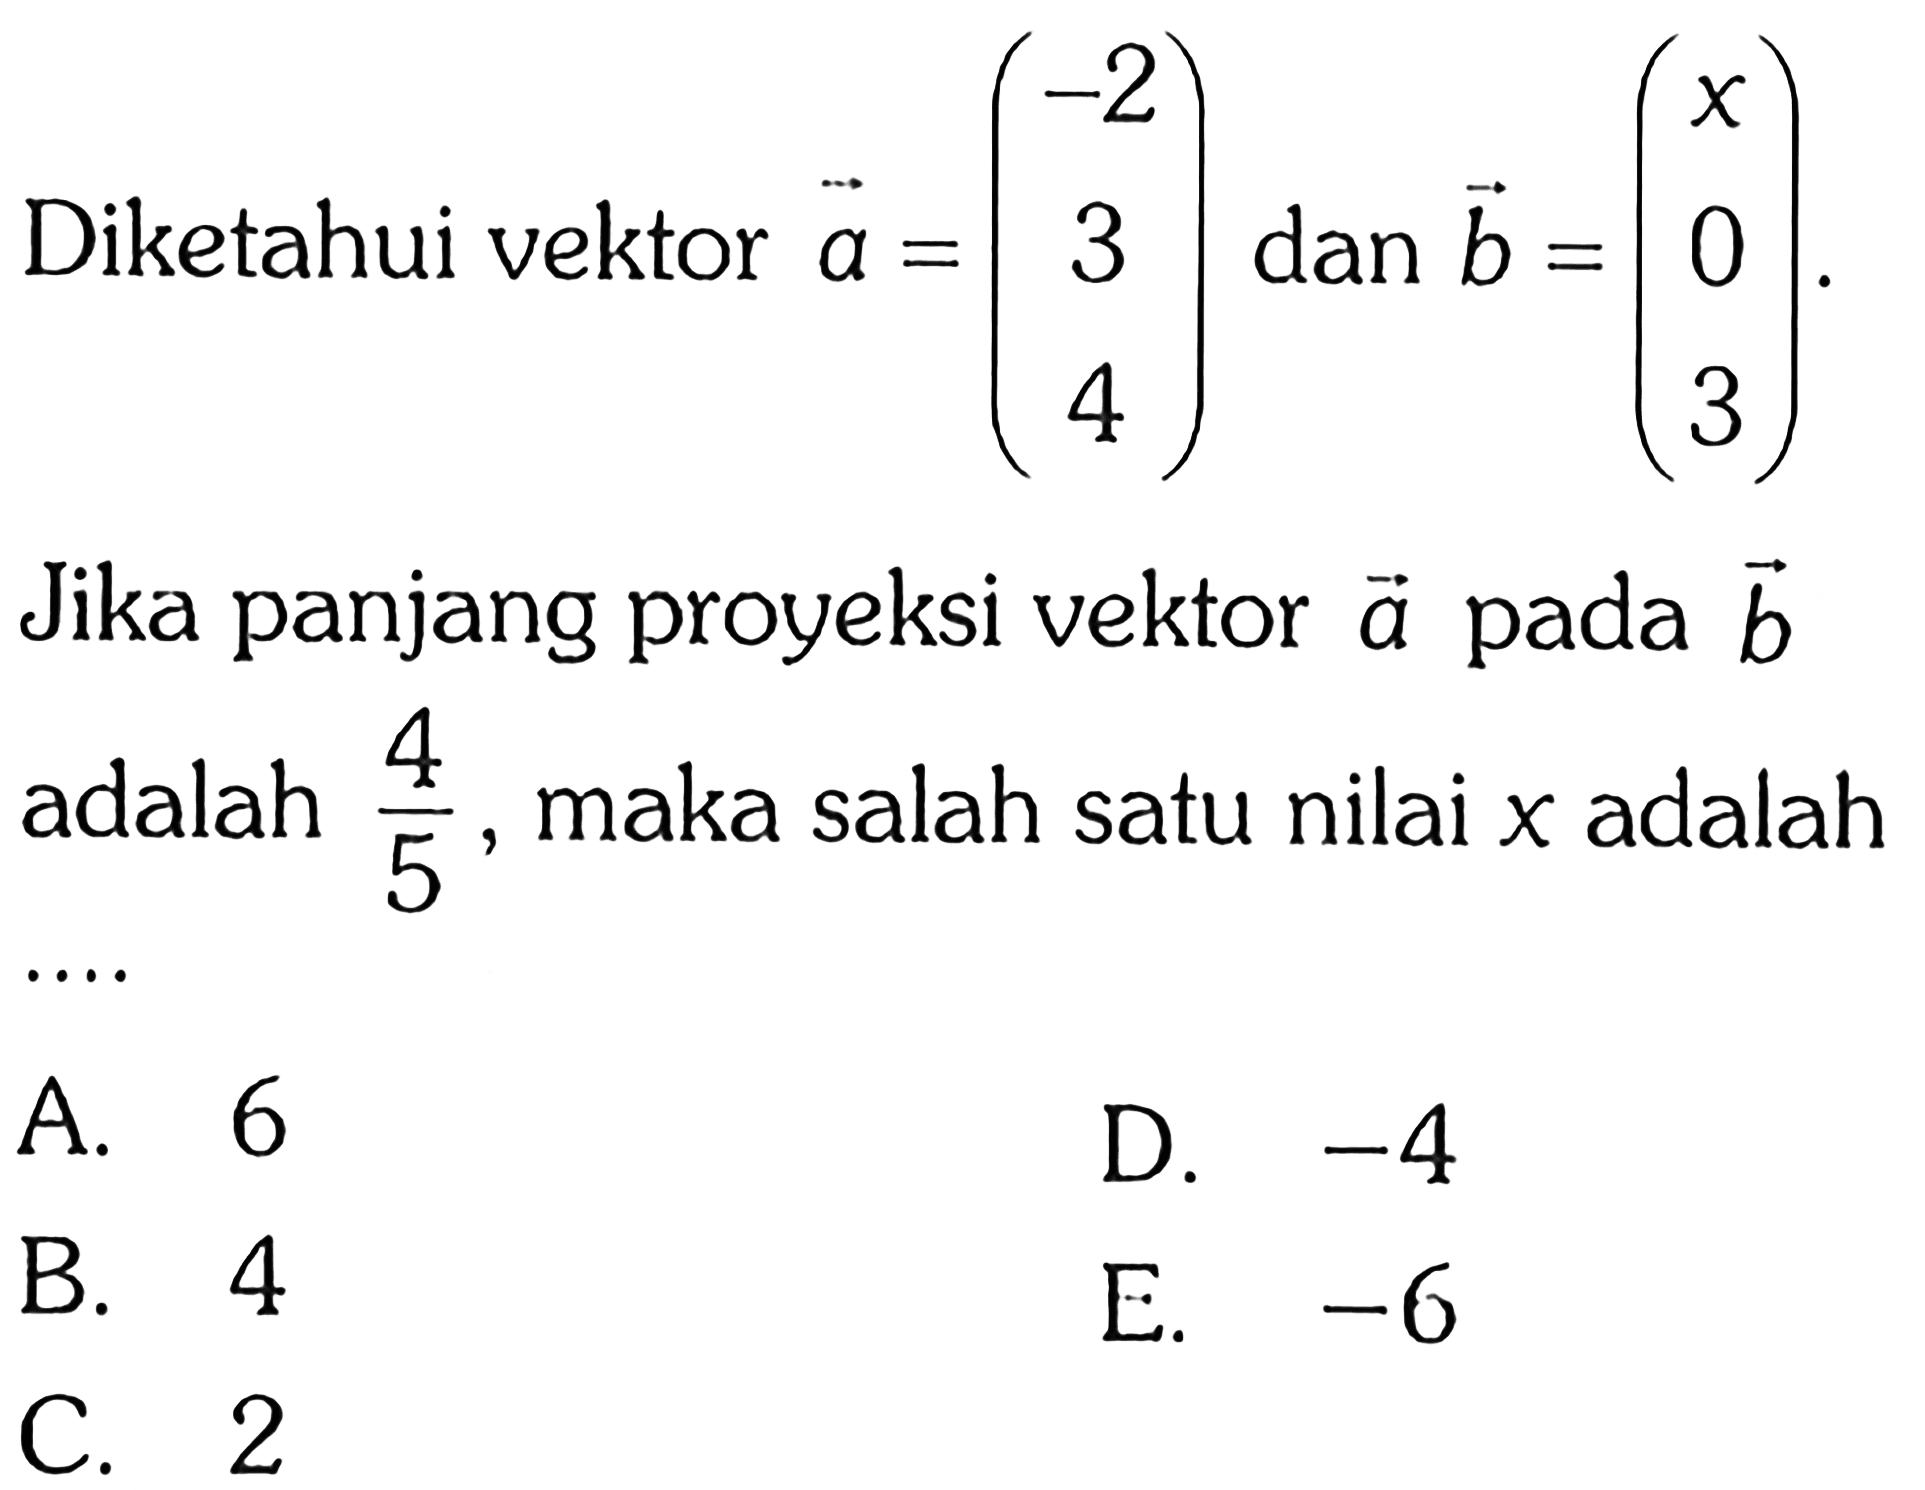 Diketahui vektor a=(-2 3 4) dan b=(x 0 3) Jika panjang proyeksi vektor a pada vektor b adalah 4/5 , maka salah satu nilai x adalah